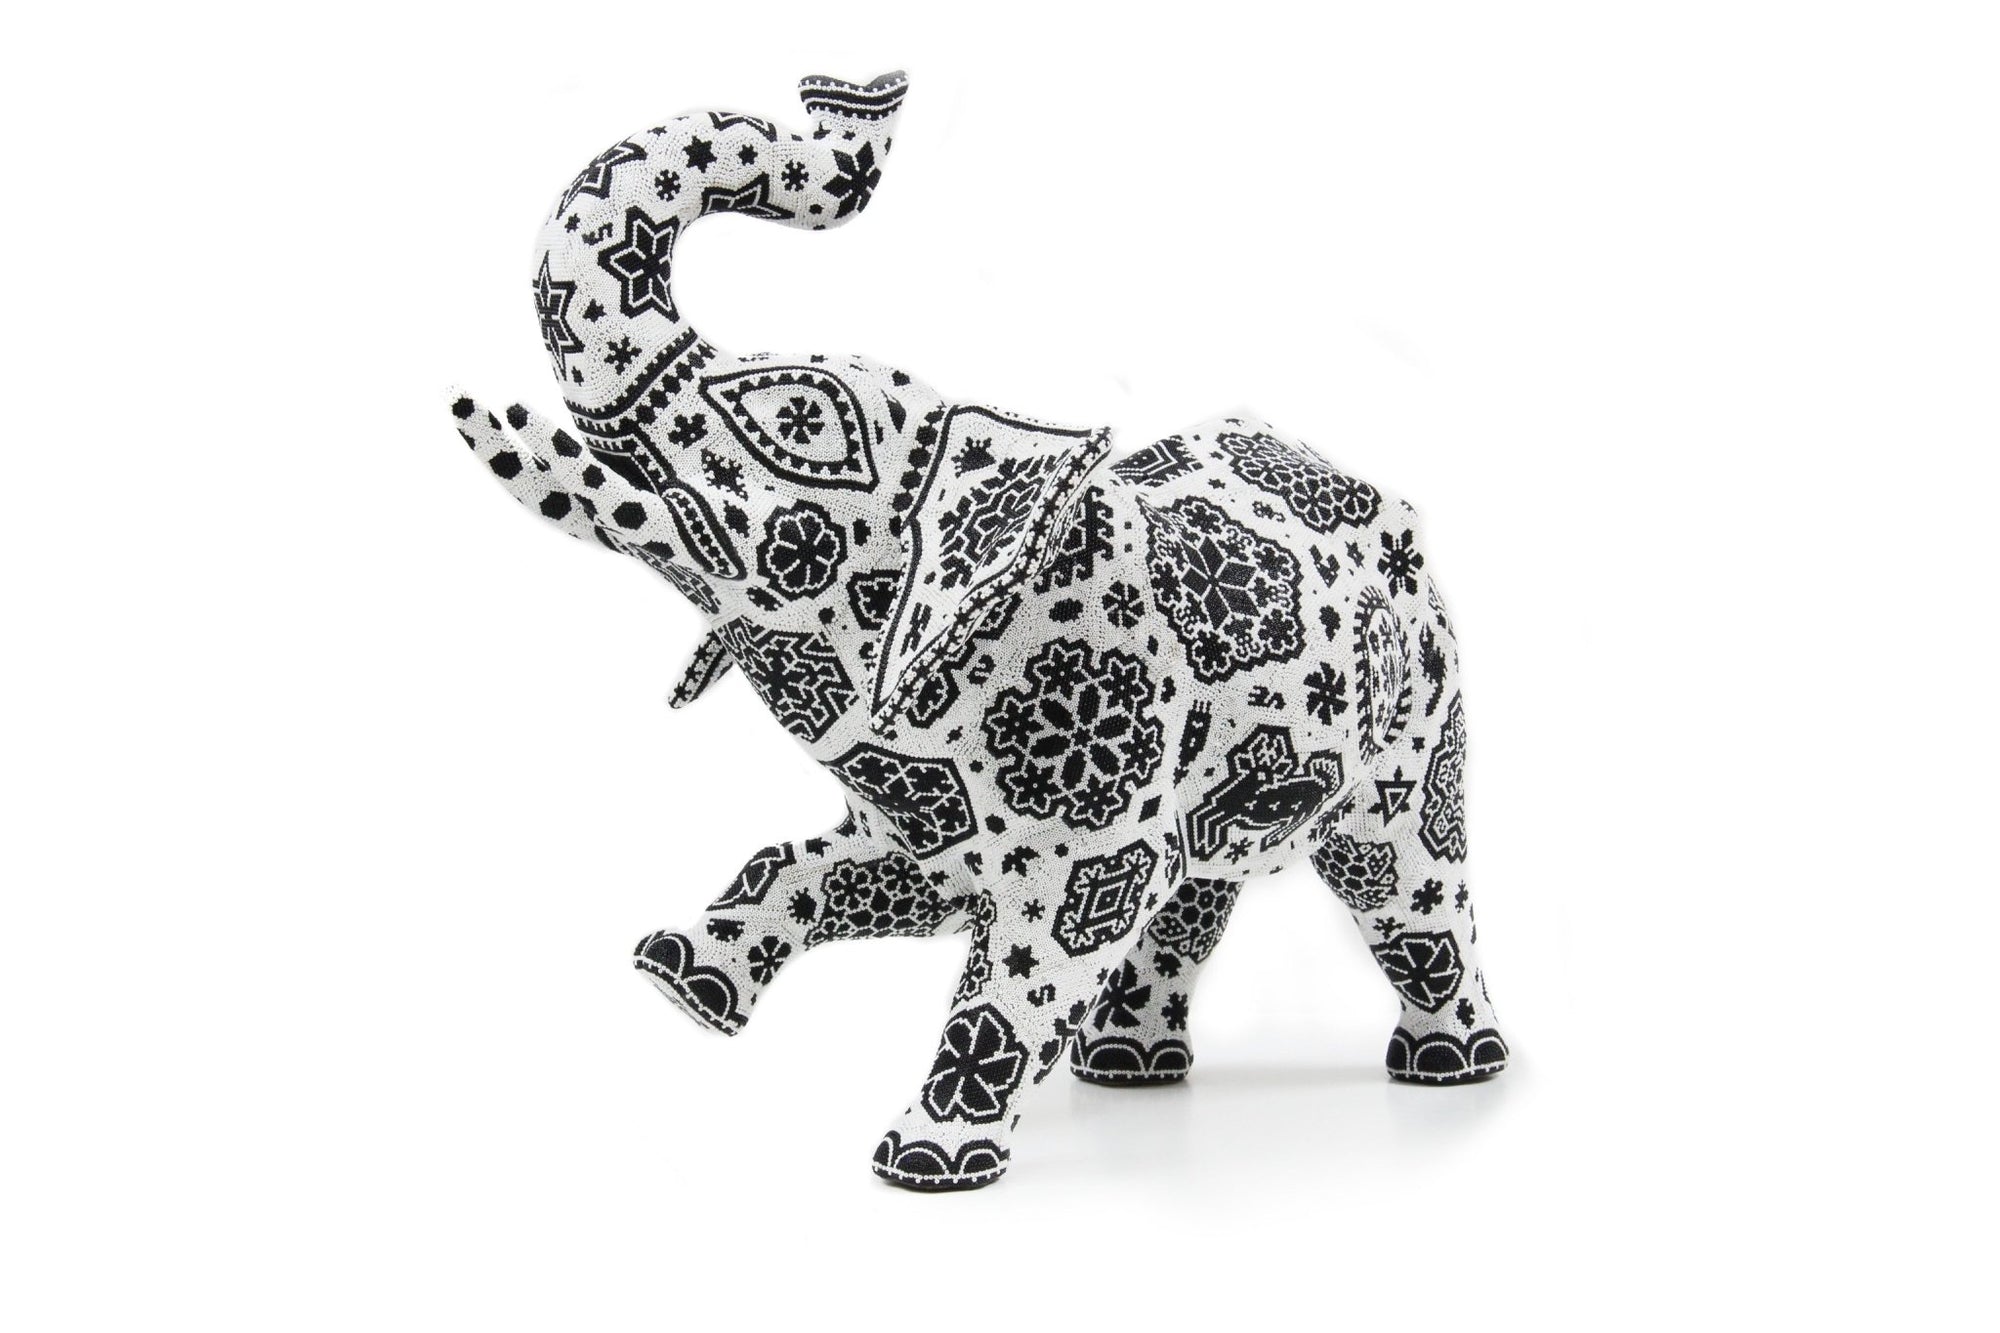 Escultura Arte Huichol - Elefante Xurawe - Arte Huichol - Marakame